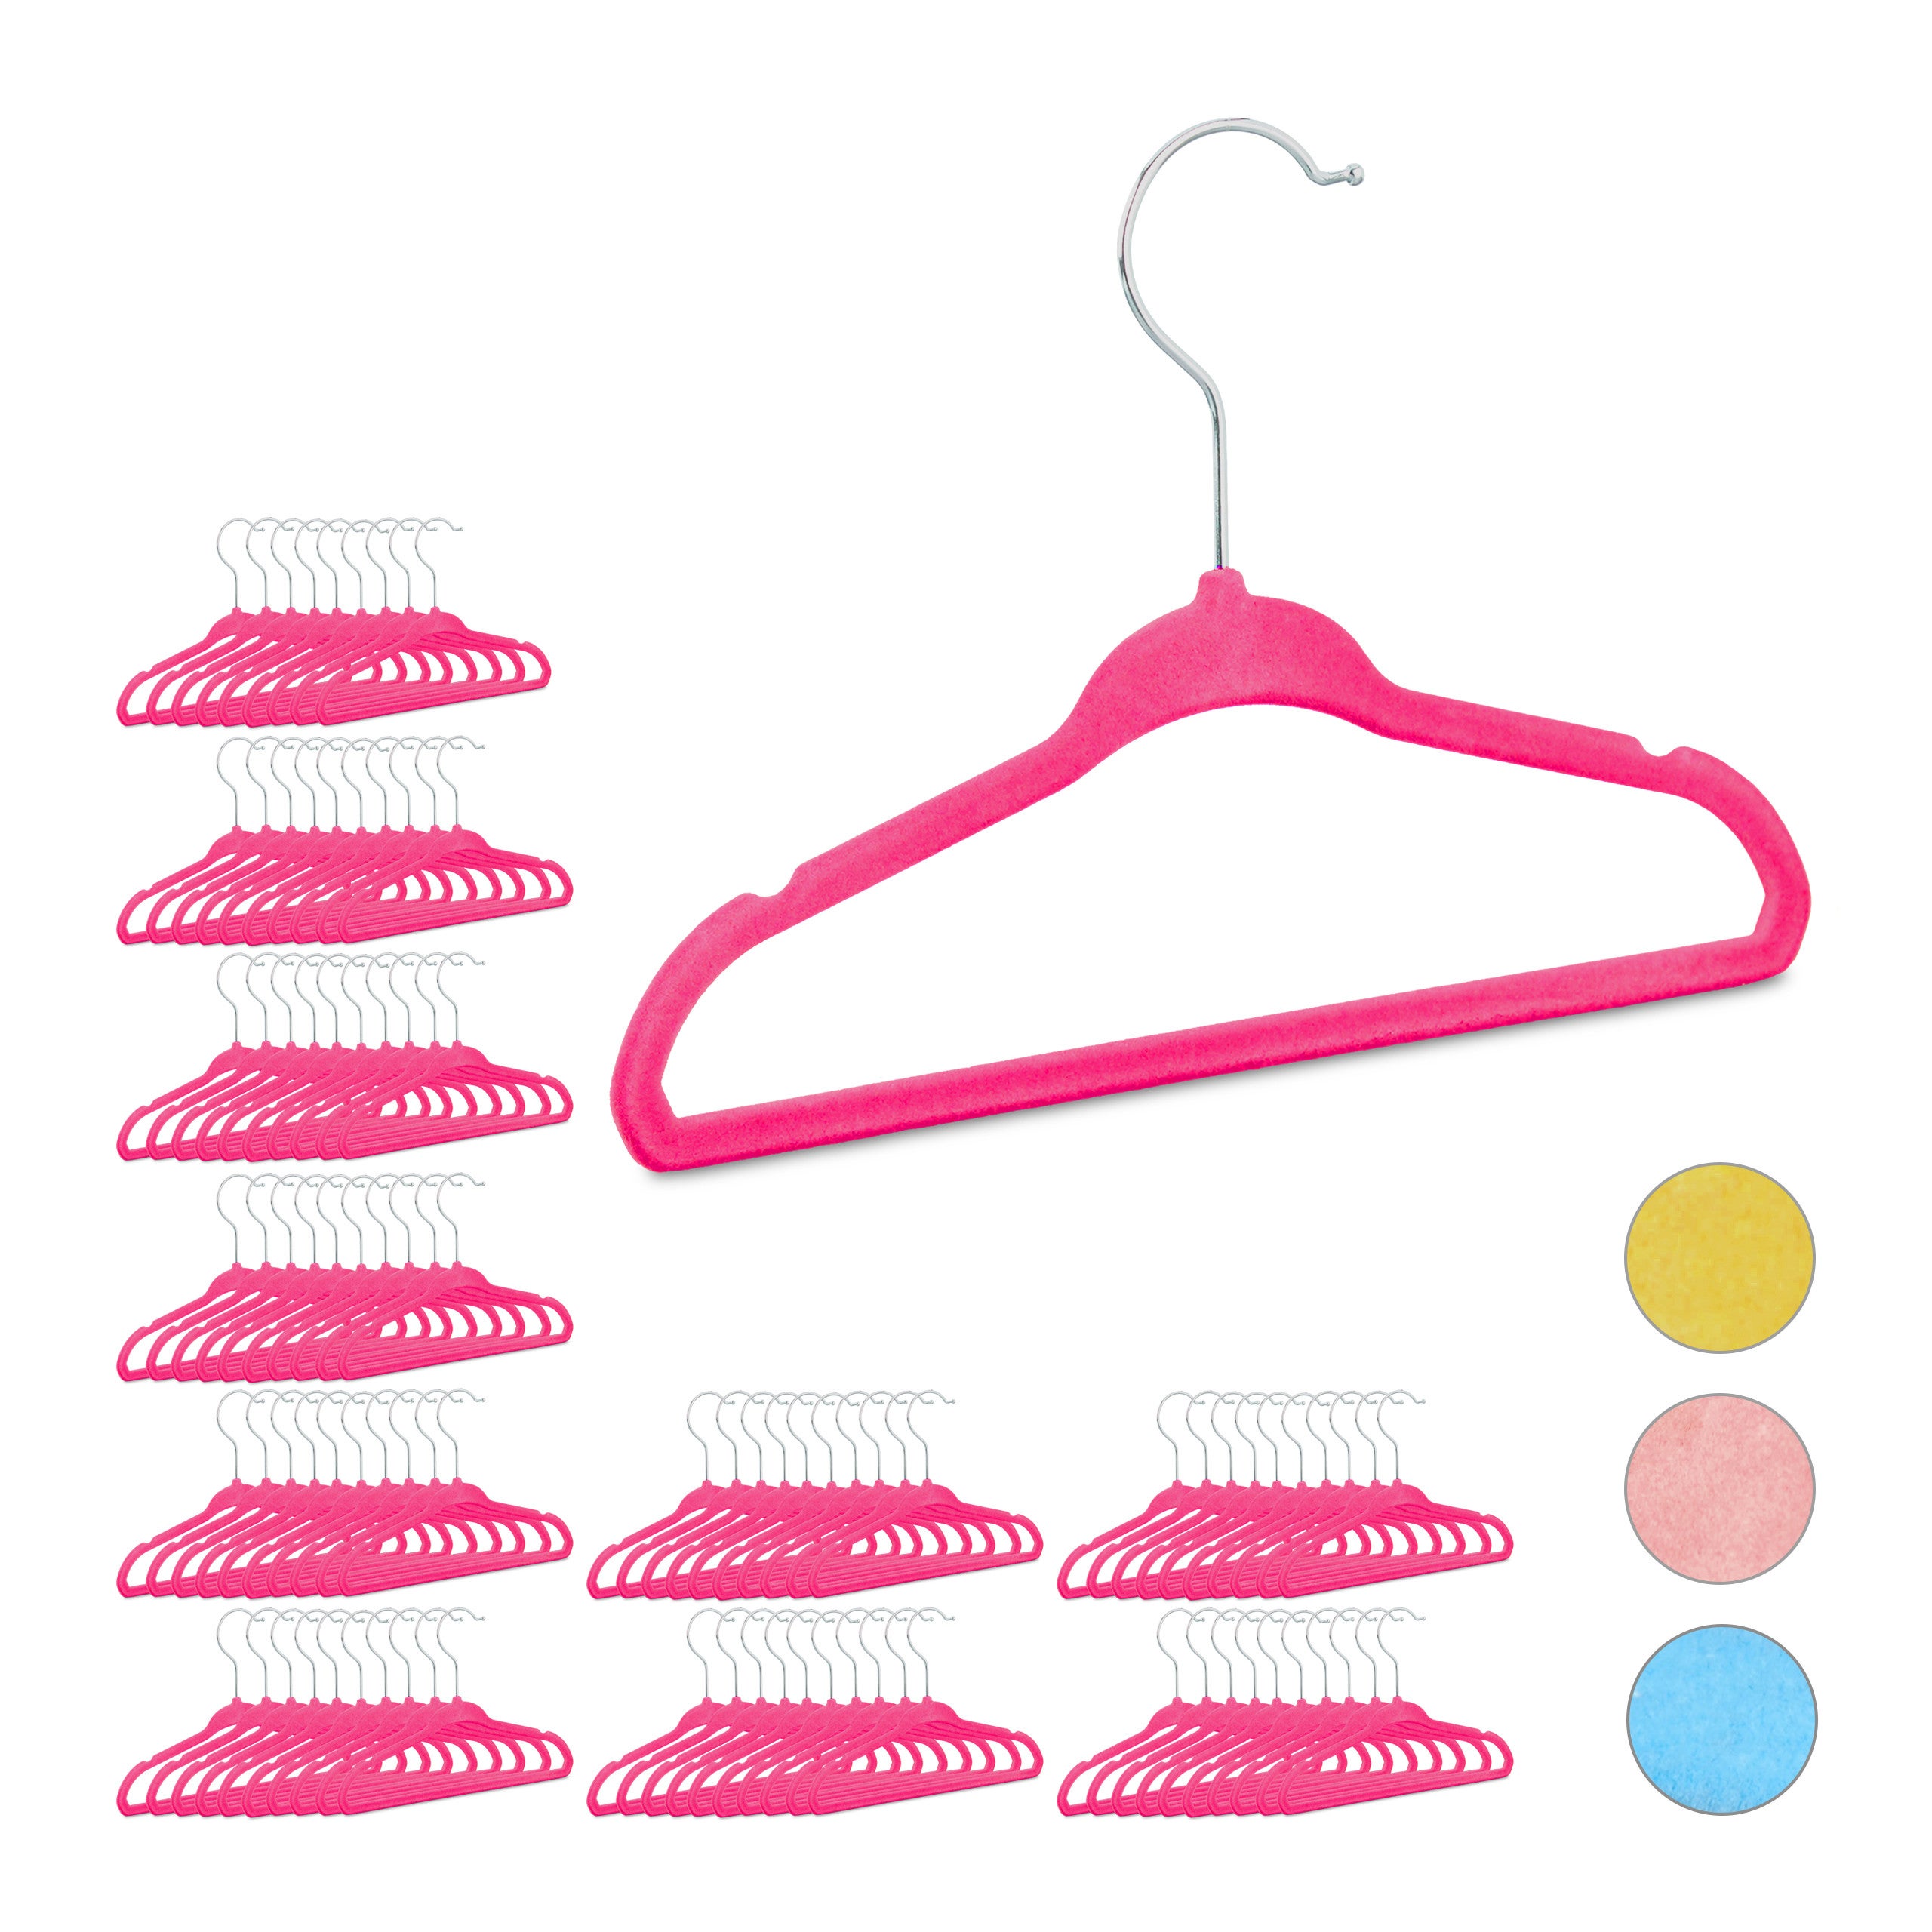 Cintres vêtements enfants, bébé, jeu de 10 cintres vêtements, motif pied,  25 cm de l, rose et blanc